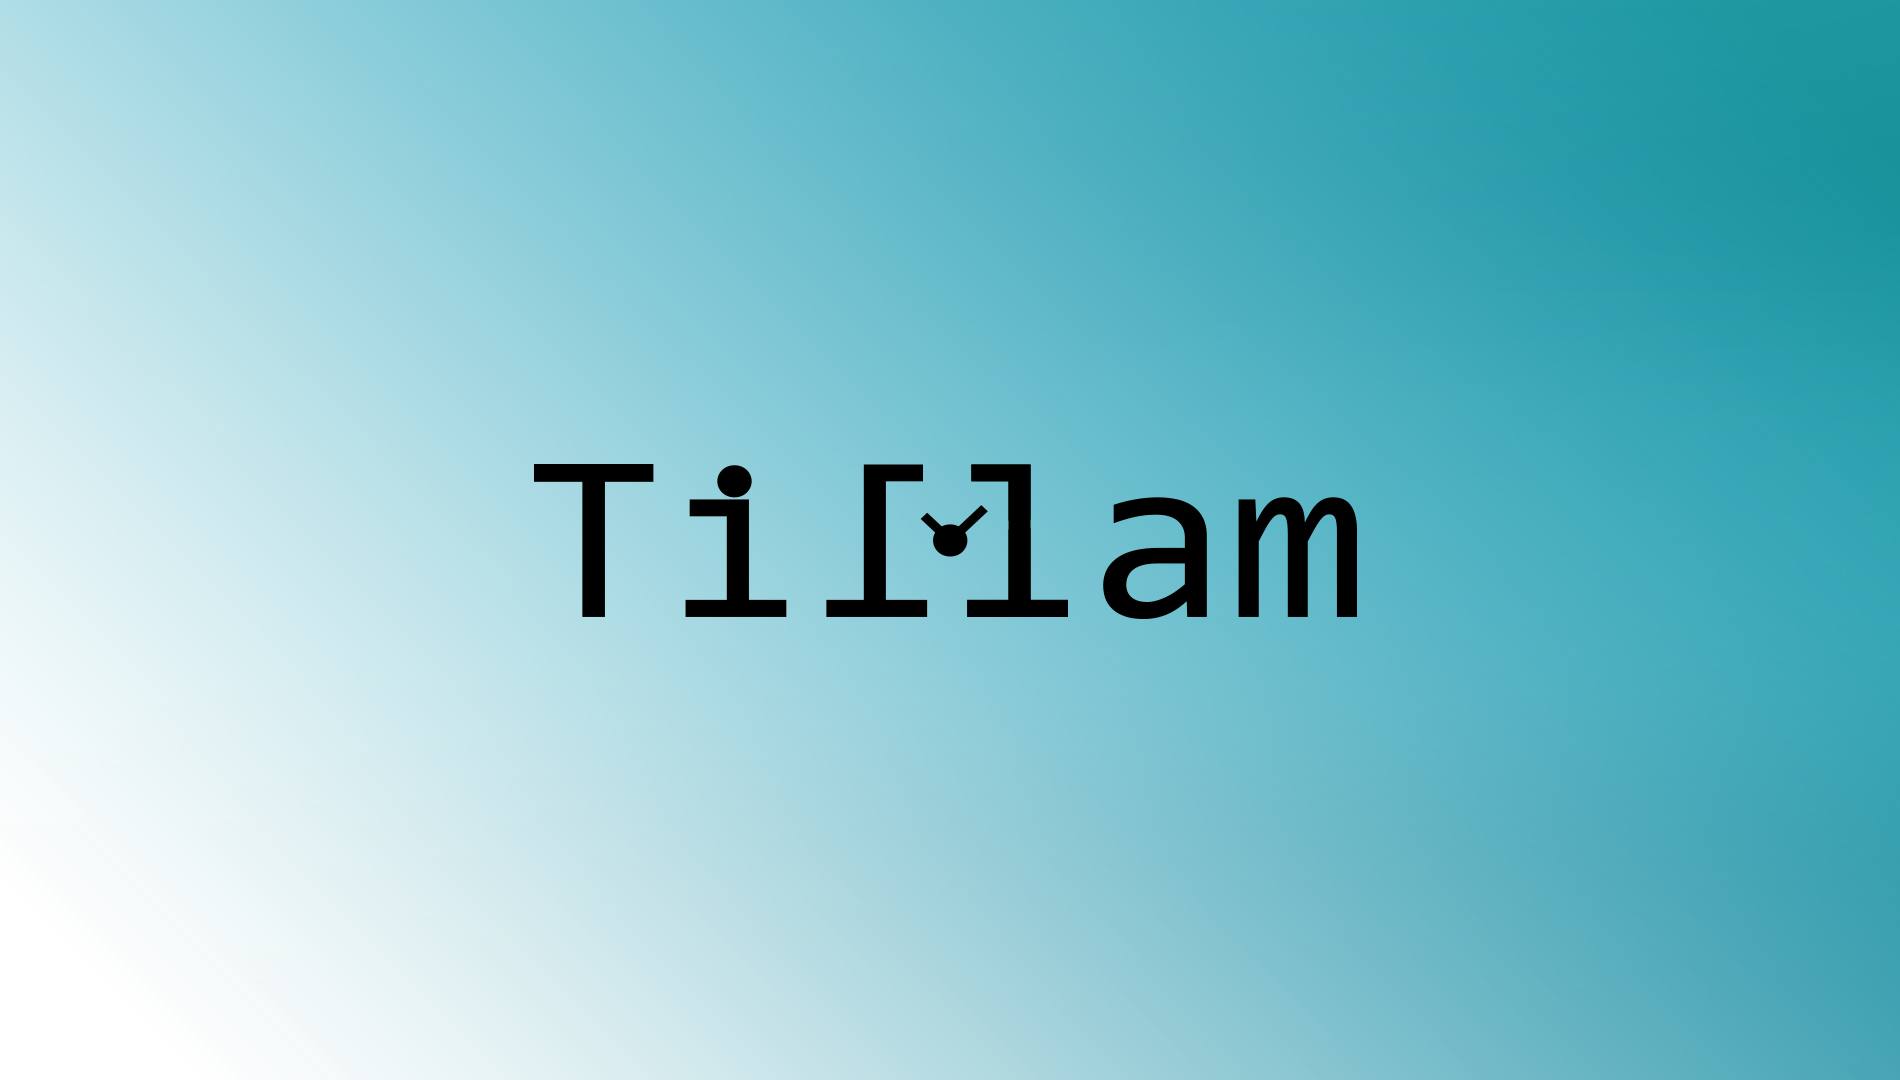 Tillam logo